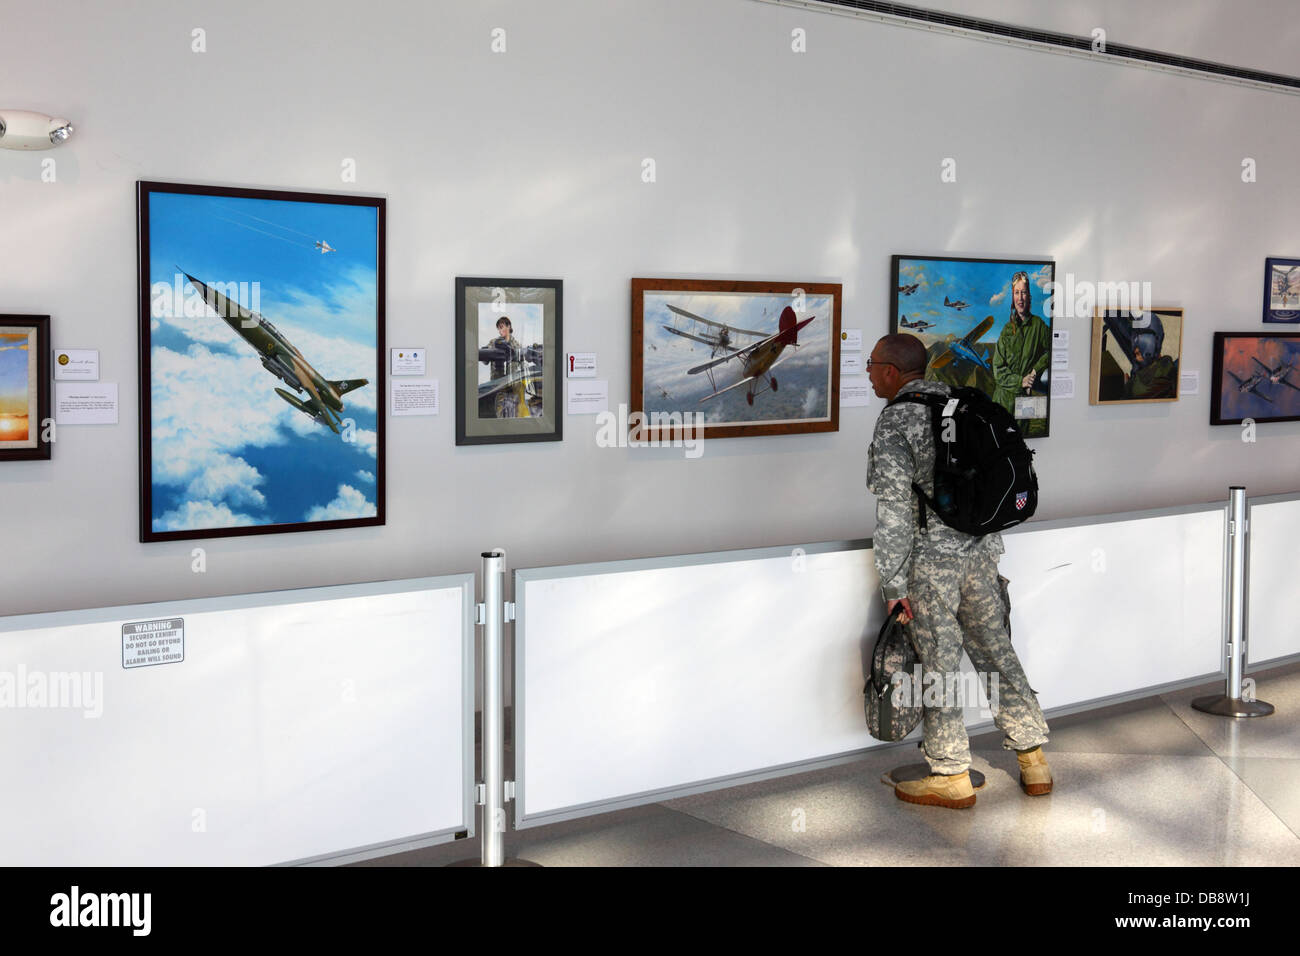 Soldat DE l'armée AMÉRICAINE regardant l'exposition d'art de l'American Society of Aviation Artists à l'aéroport international de Baltimore–Washington ( BWI ), Maryland, États-Unis Banque D'Images